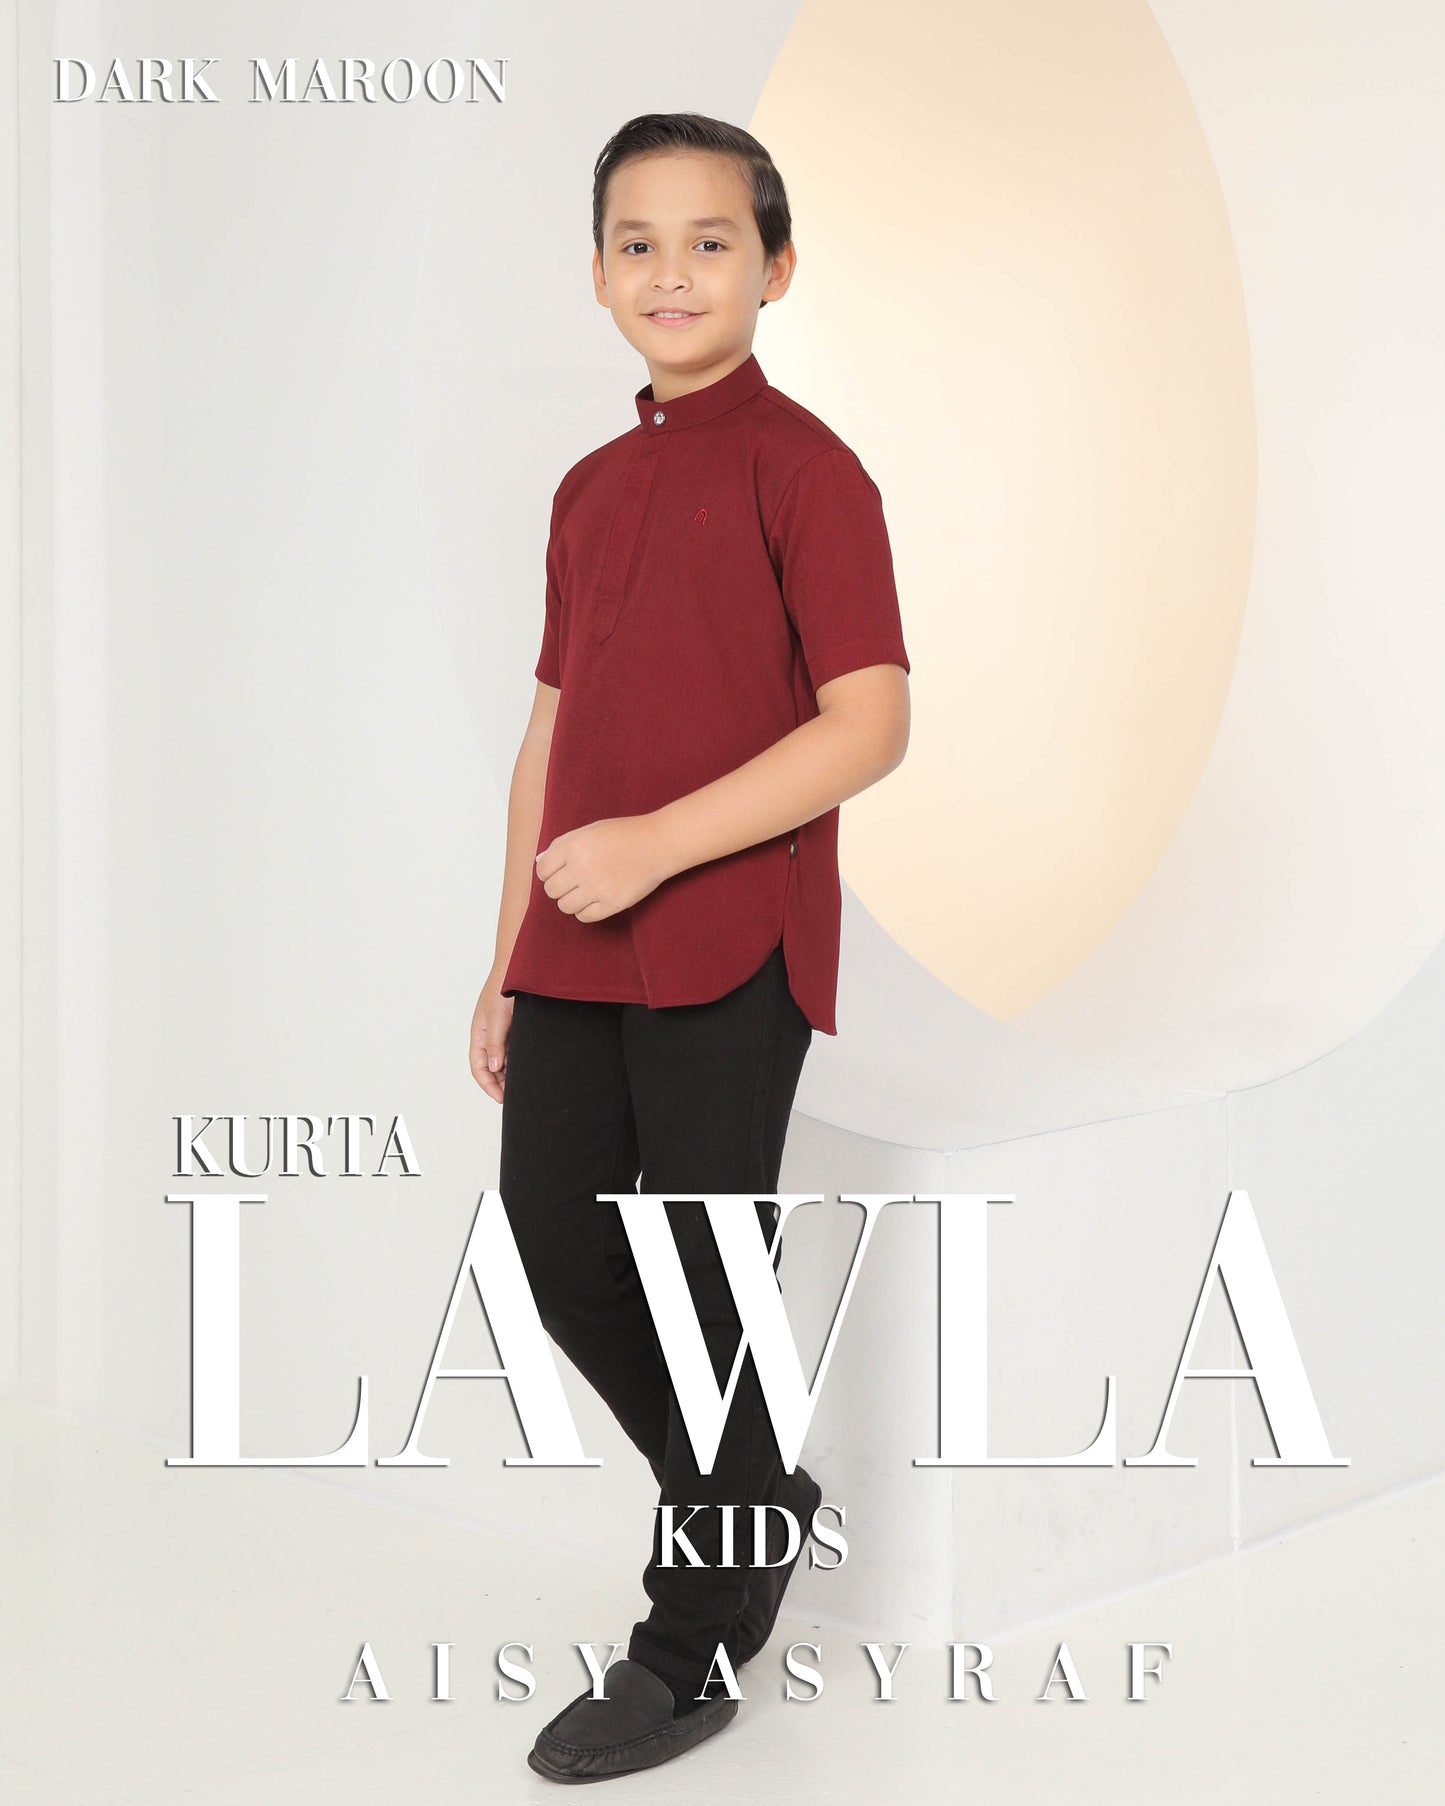 Kurta Lawla Kids - Dark Maroon